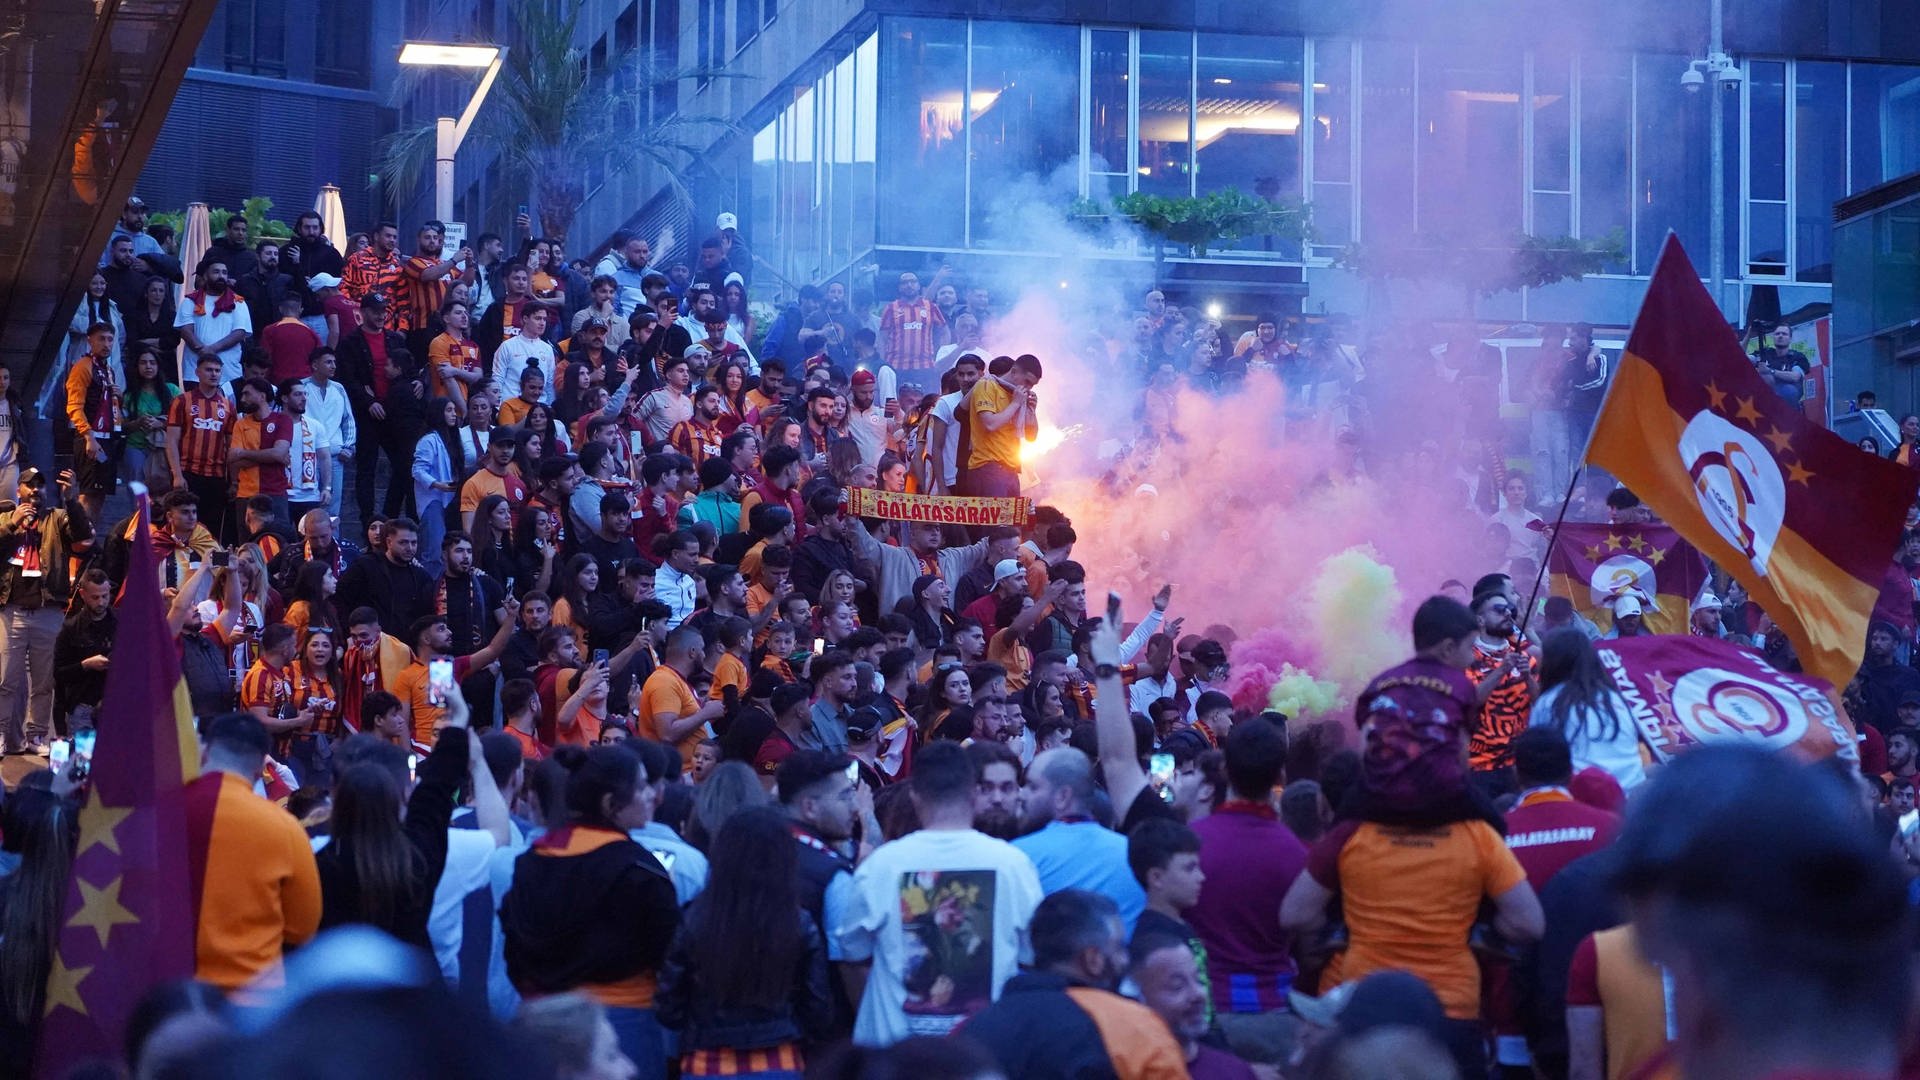 Türkische Fußball-Meisterschaft: Fans feiern in Stuttgart - 18 Festnahmen